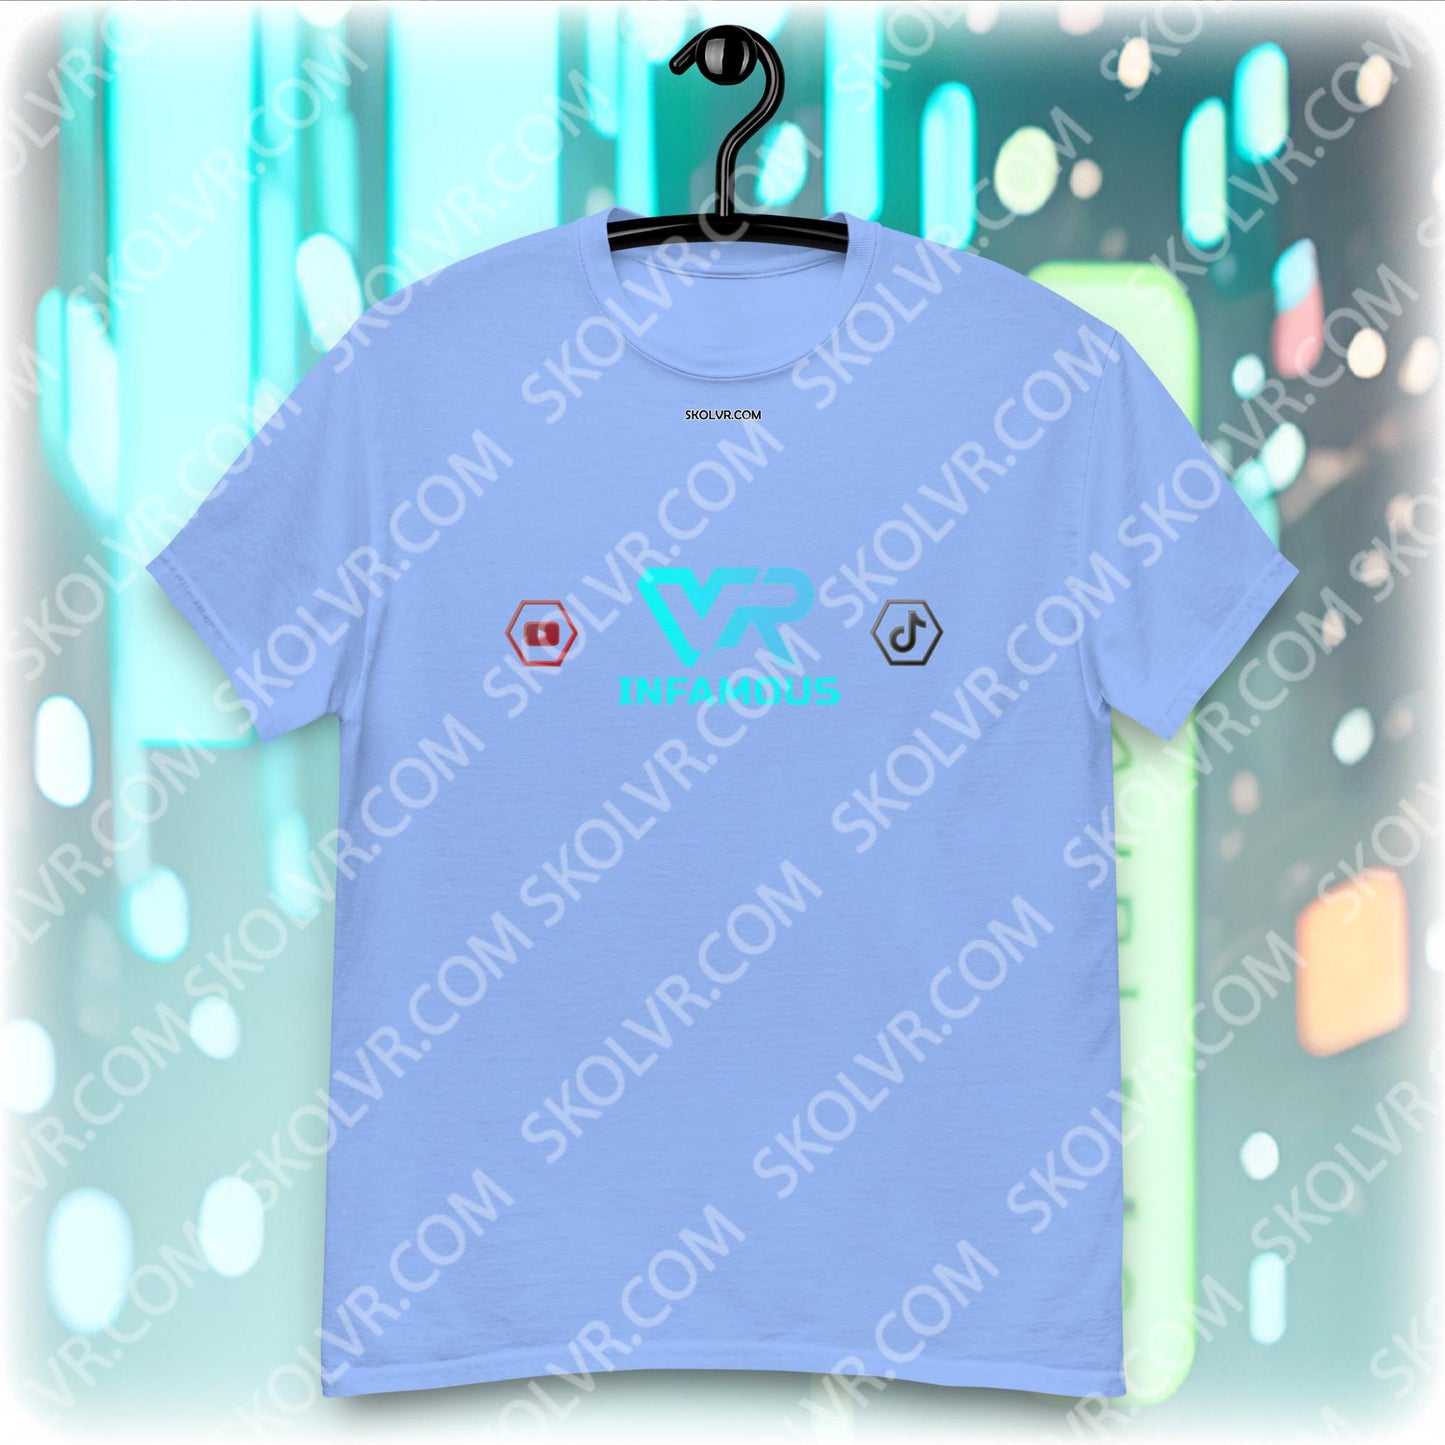 VR T-Shirt 1047 VRINFAMOUS